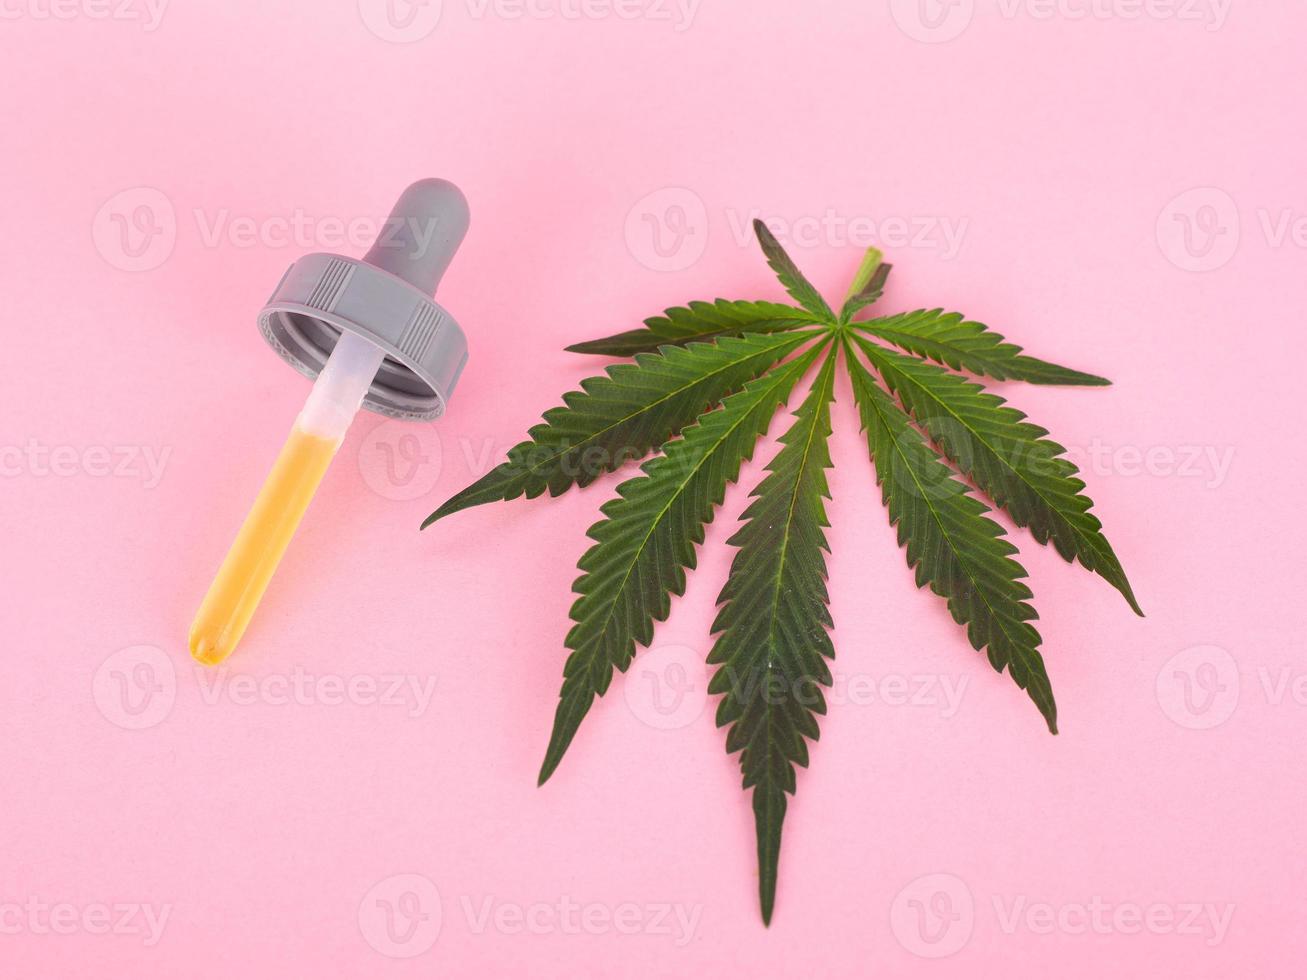 cannabisblad och pipett med extrakt av thc-koncentrat på rosa bakgrund foto